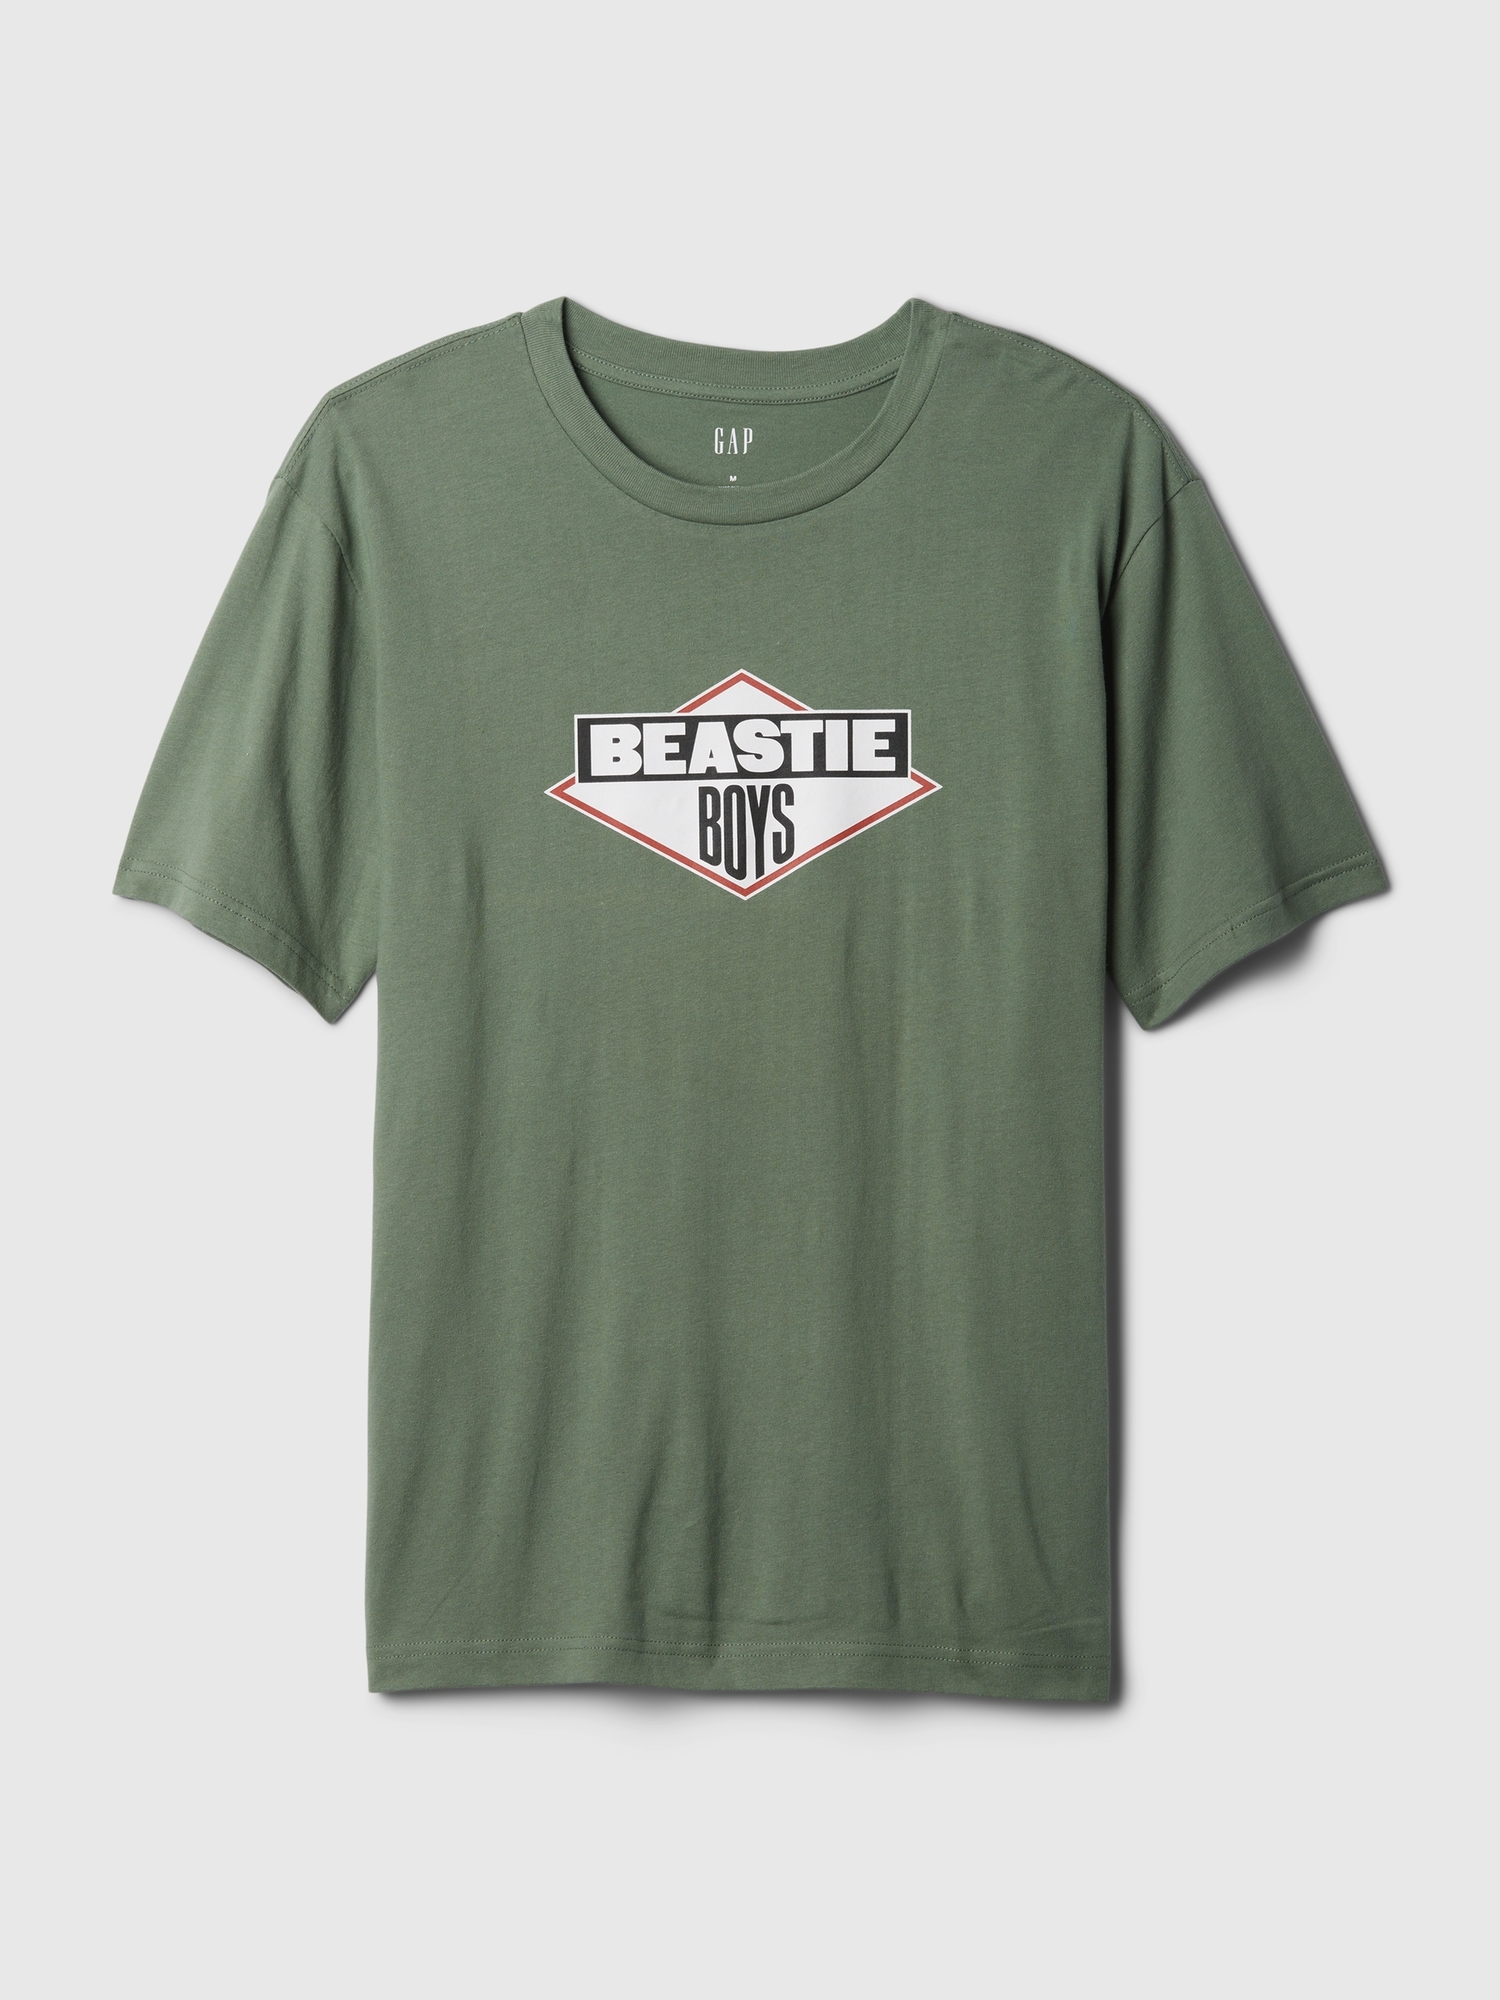 Beastie Boys' Graphic T-Shirt